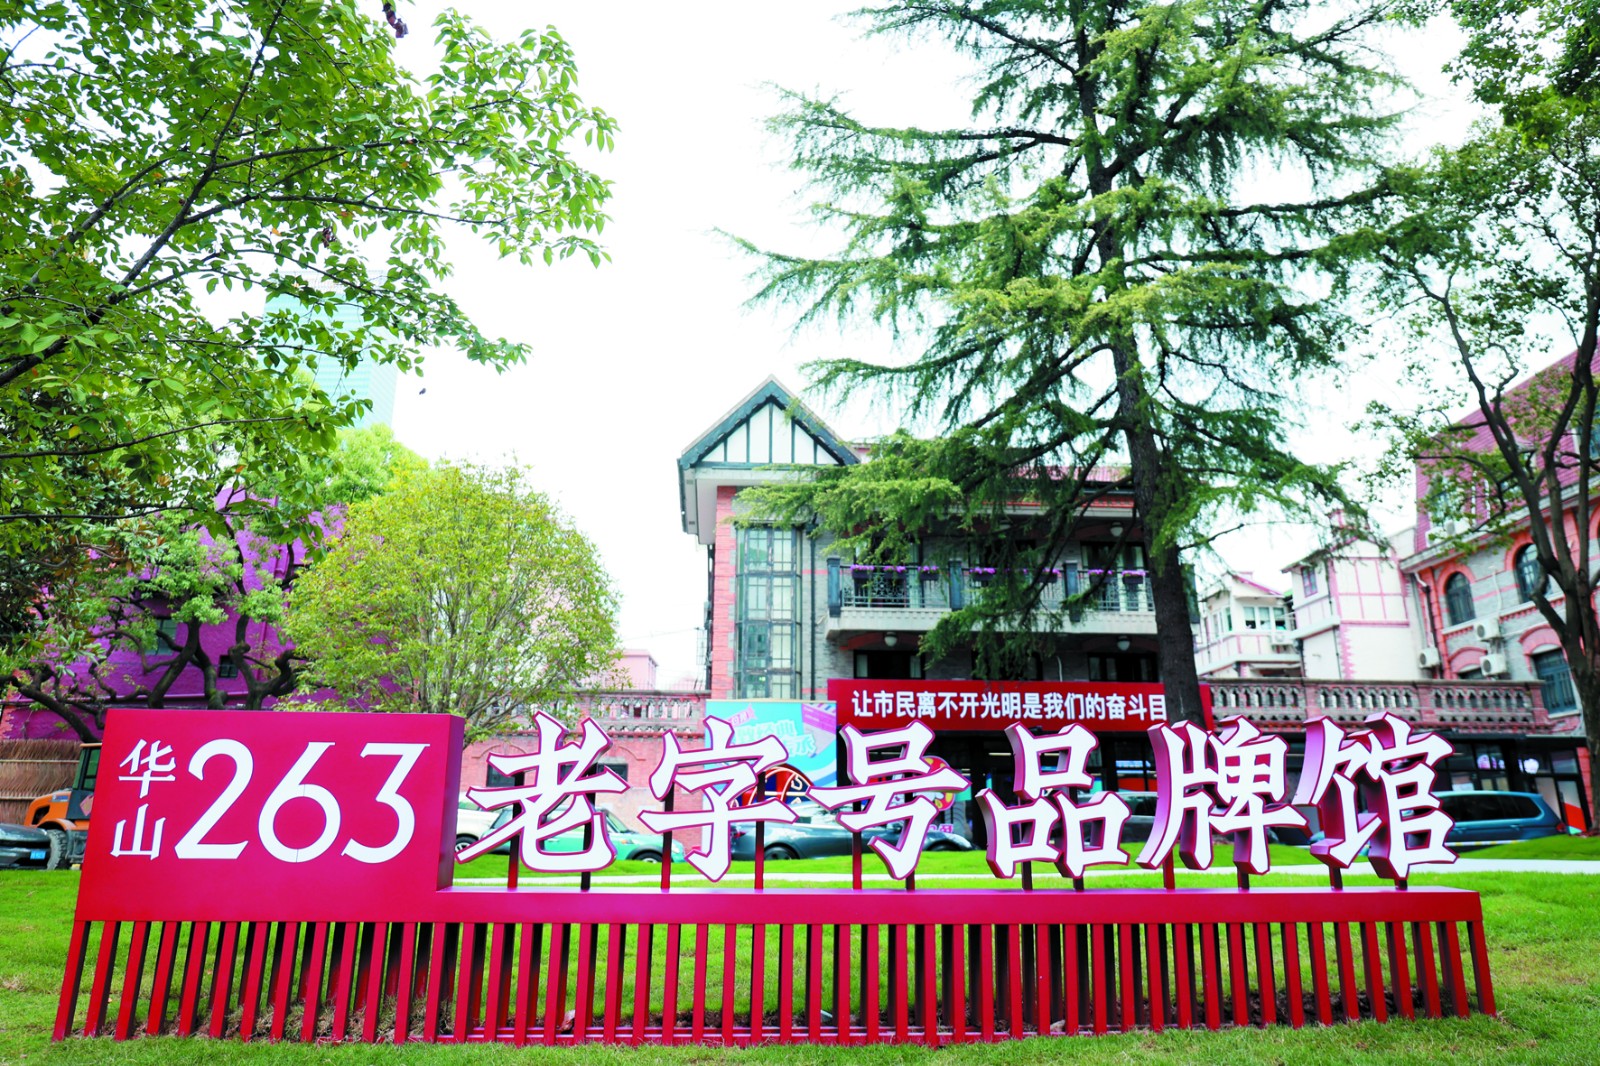 华山·263老字号品牌馆于10月1日对外开放